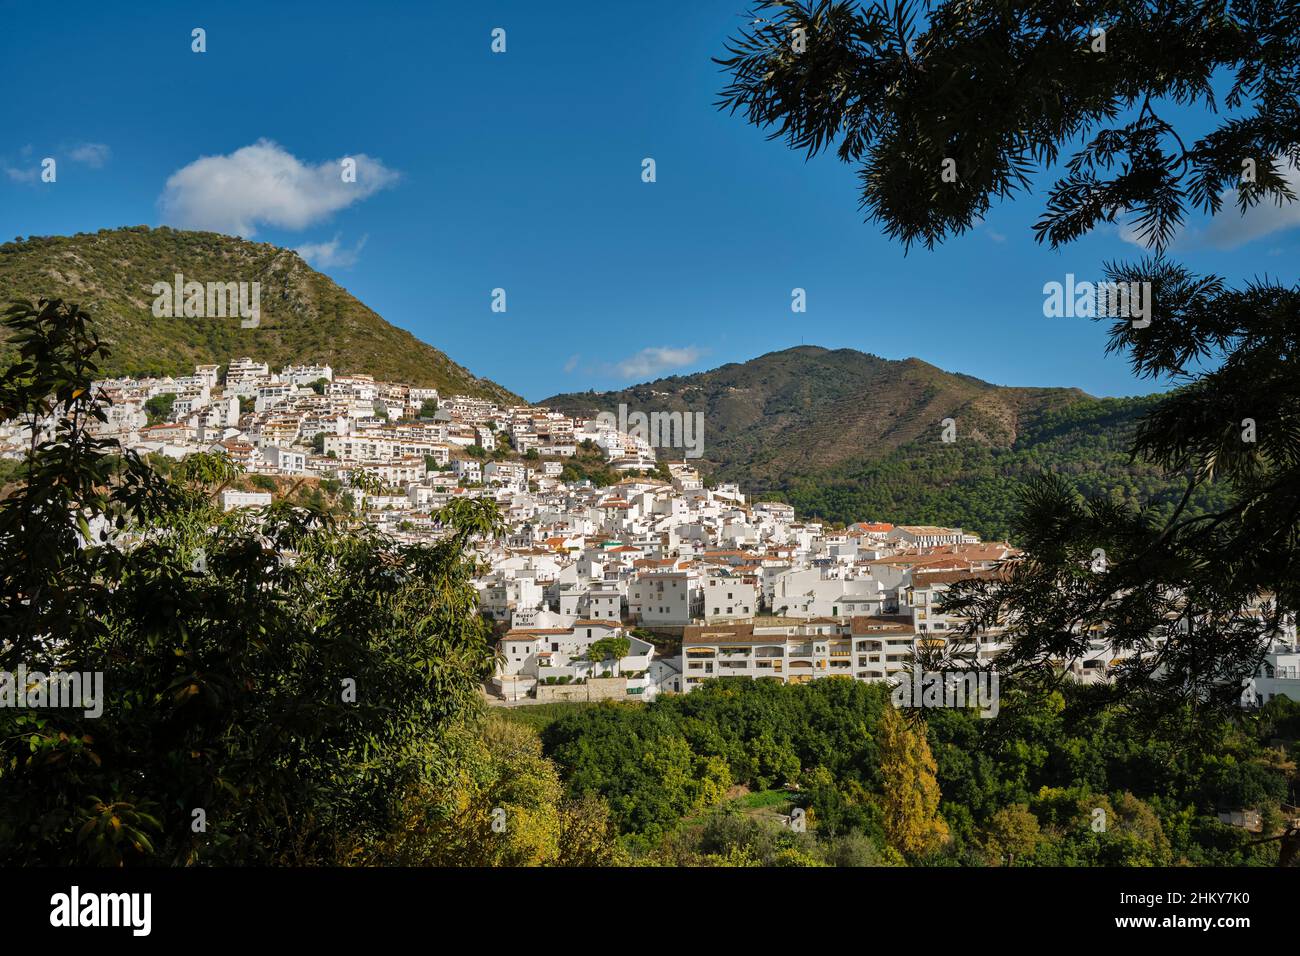 Vista general panorámica del pueblo blanco de Ojen. Málaga provincia Costa del Sol. Andalucía Sur de España, Europa Foto de stock